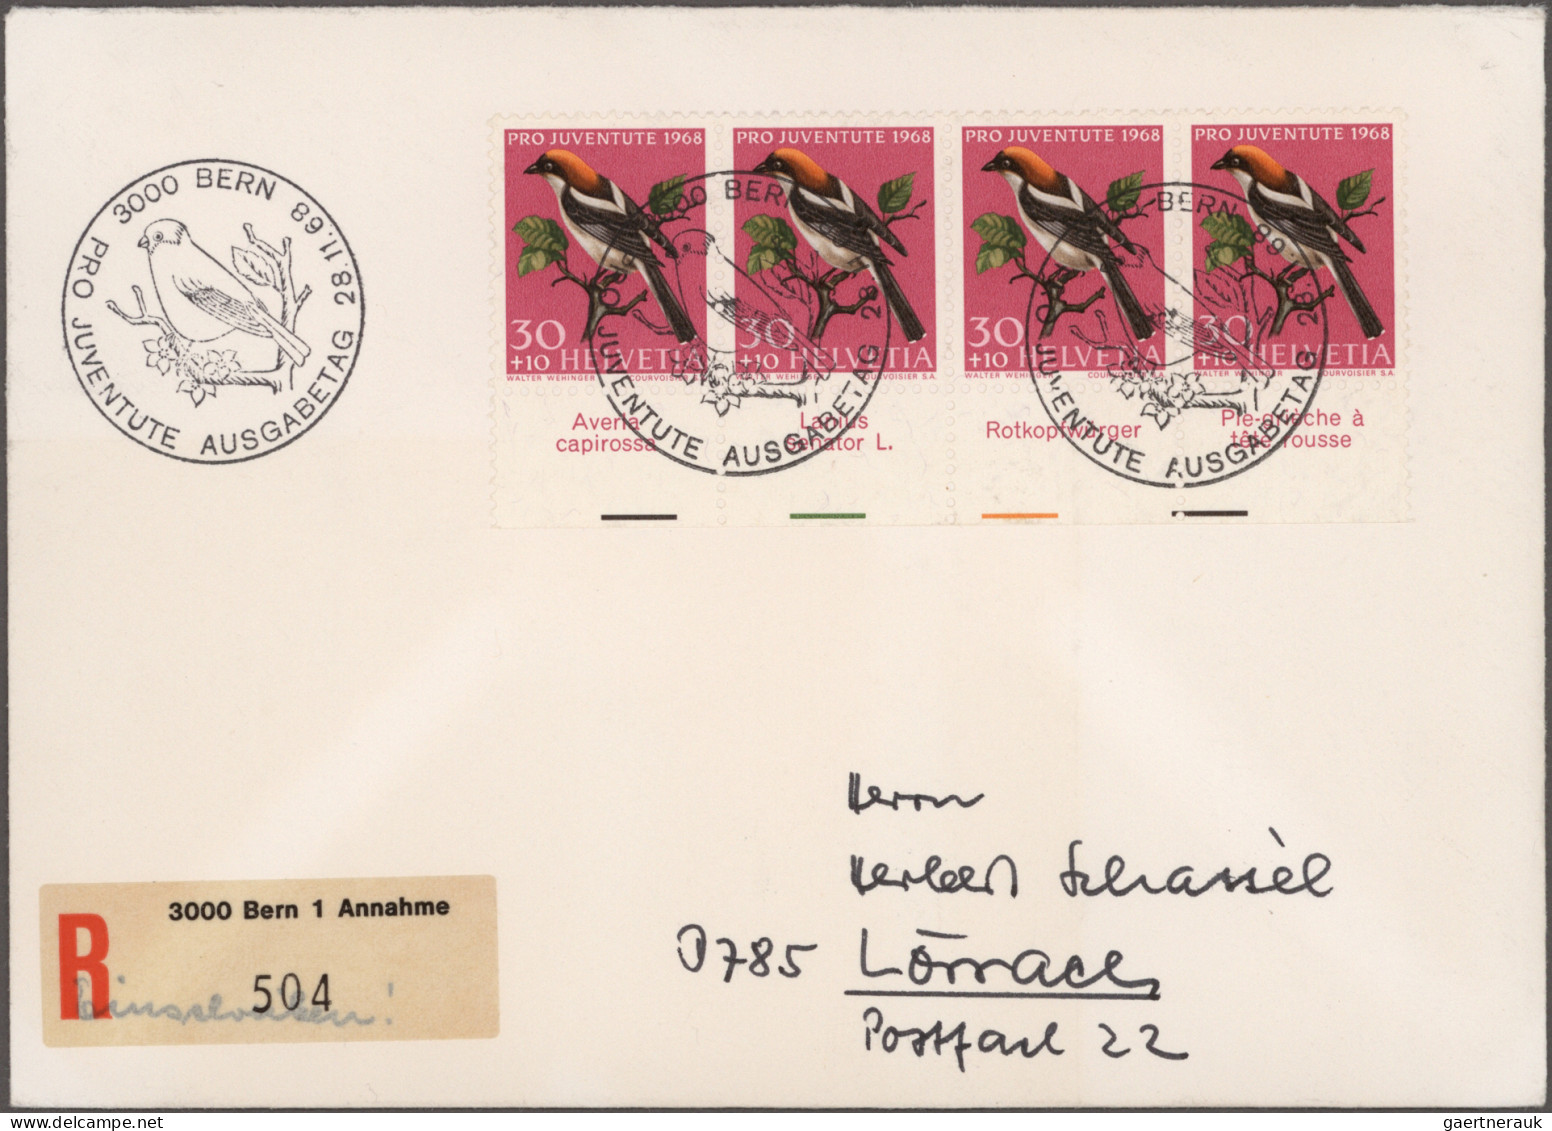 Schweiz: 1900/1990 (ca.), umfangreicher Bestand von ca. 280 Briefen und Karten i